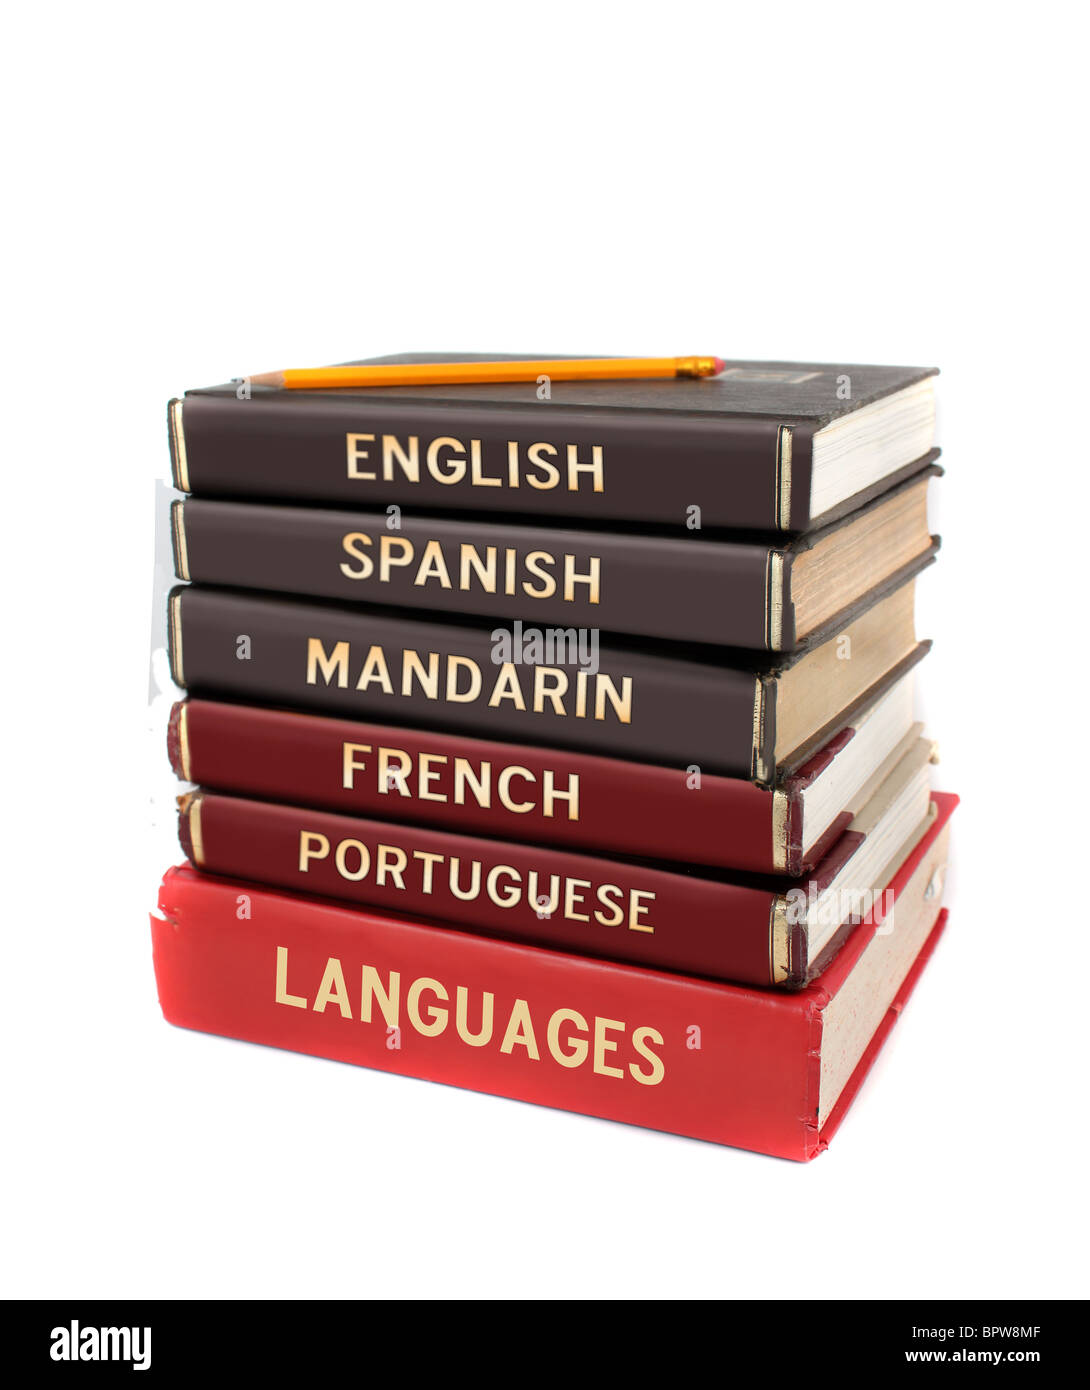 Los libros de texto de idiomas como inglés, español, chino mandarín, francés y portugués para fines educativos. Foto de stock